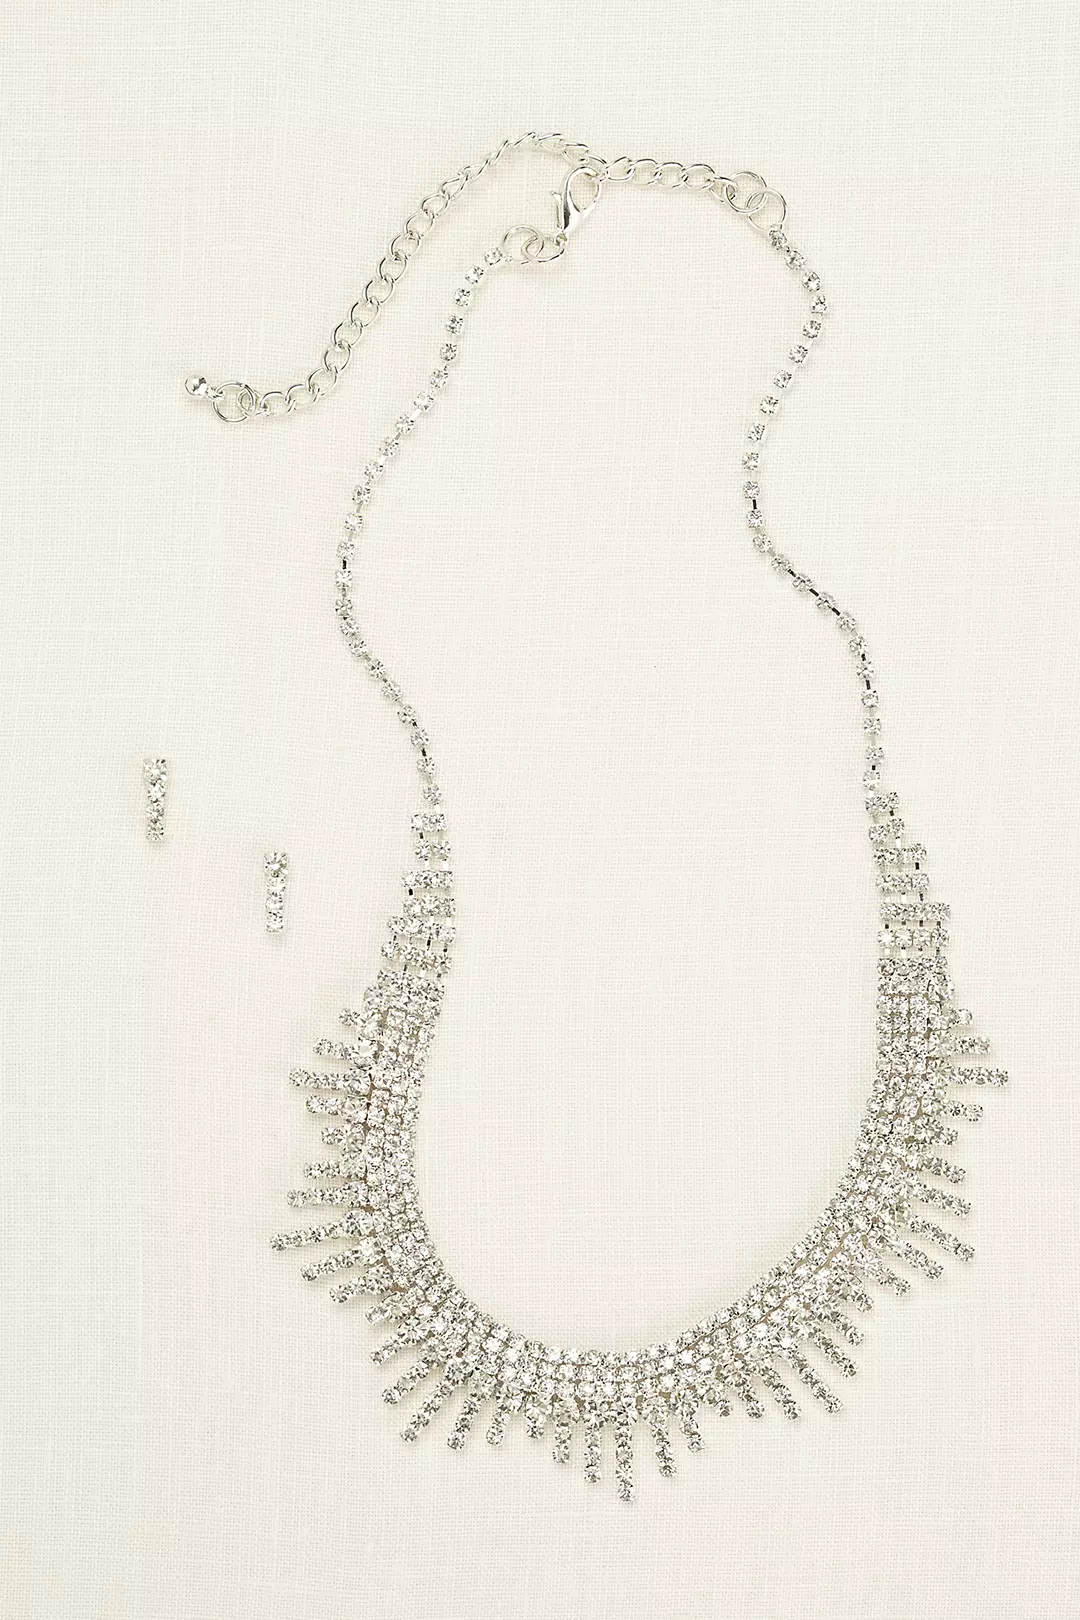 Layered Fringe Necklace and Earring Set Image